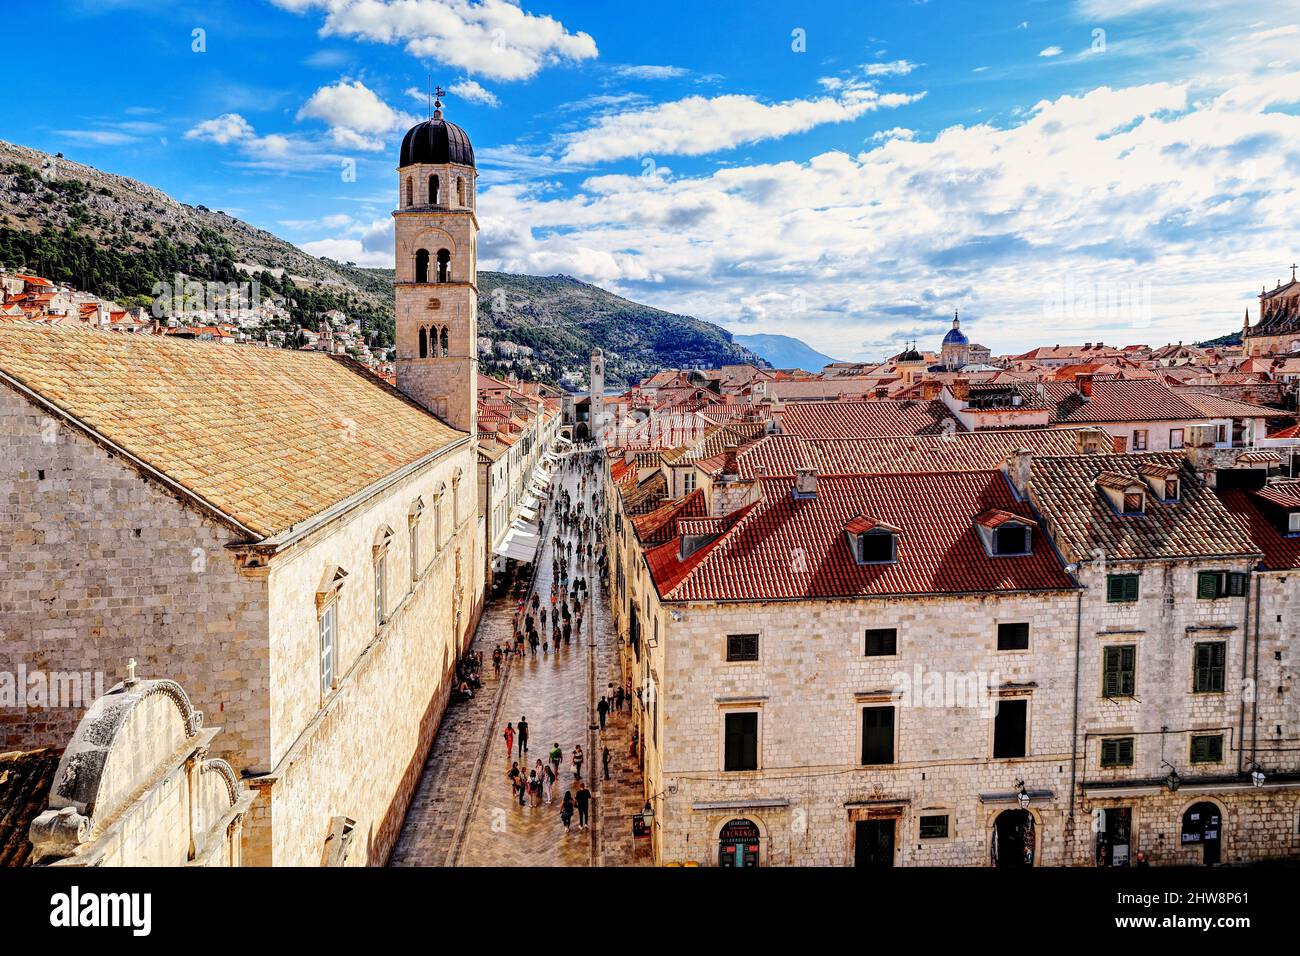 Vieille ville de Dubrovnik, Croatie - vue sur Placa Stradun ou la rue principale après l'église Saint-Sauveur jusqu'au Palais Sponza Banque D'Images